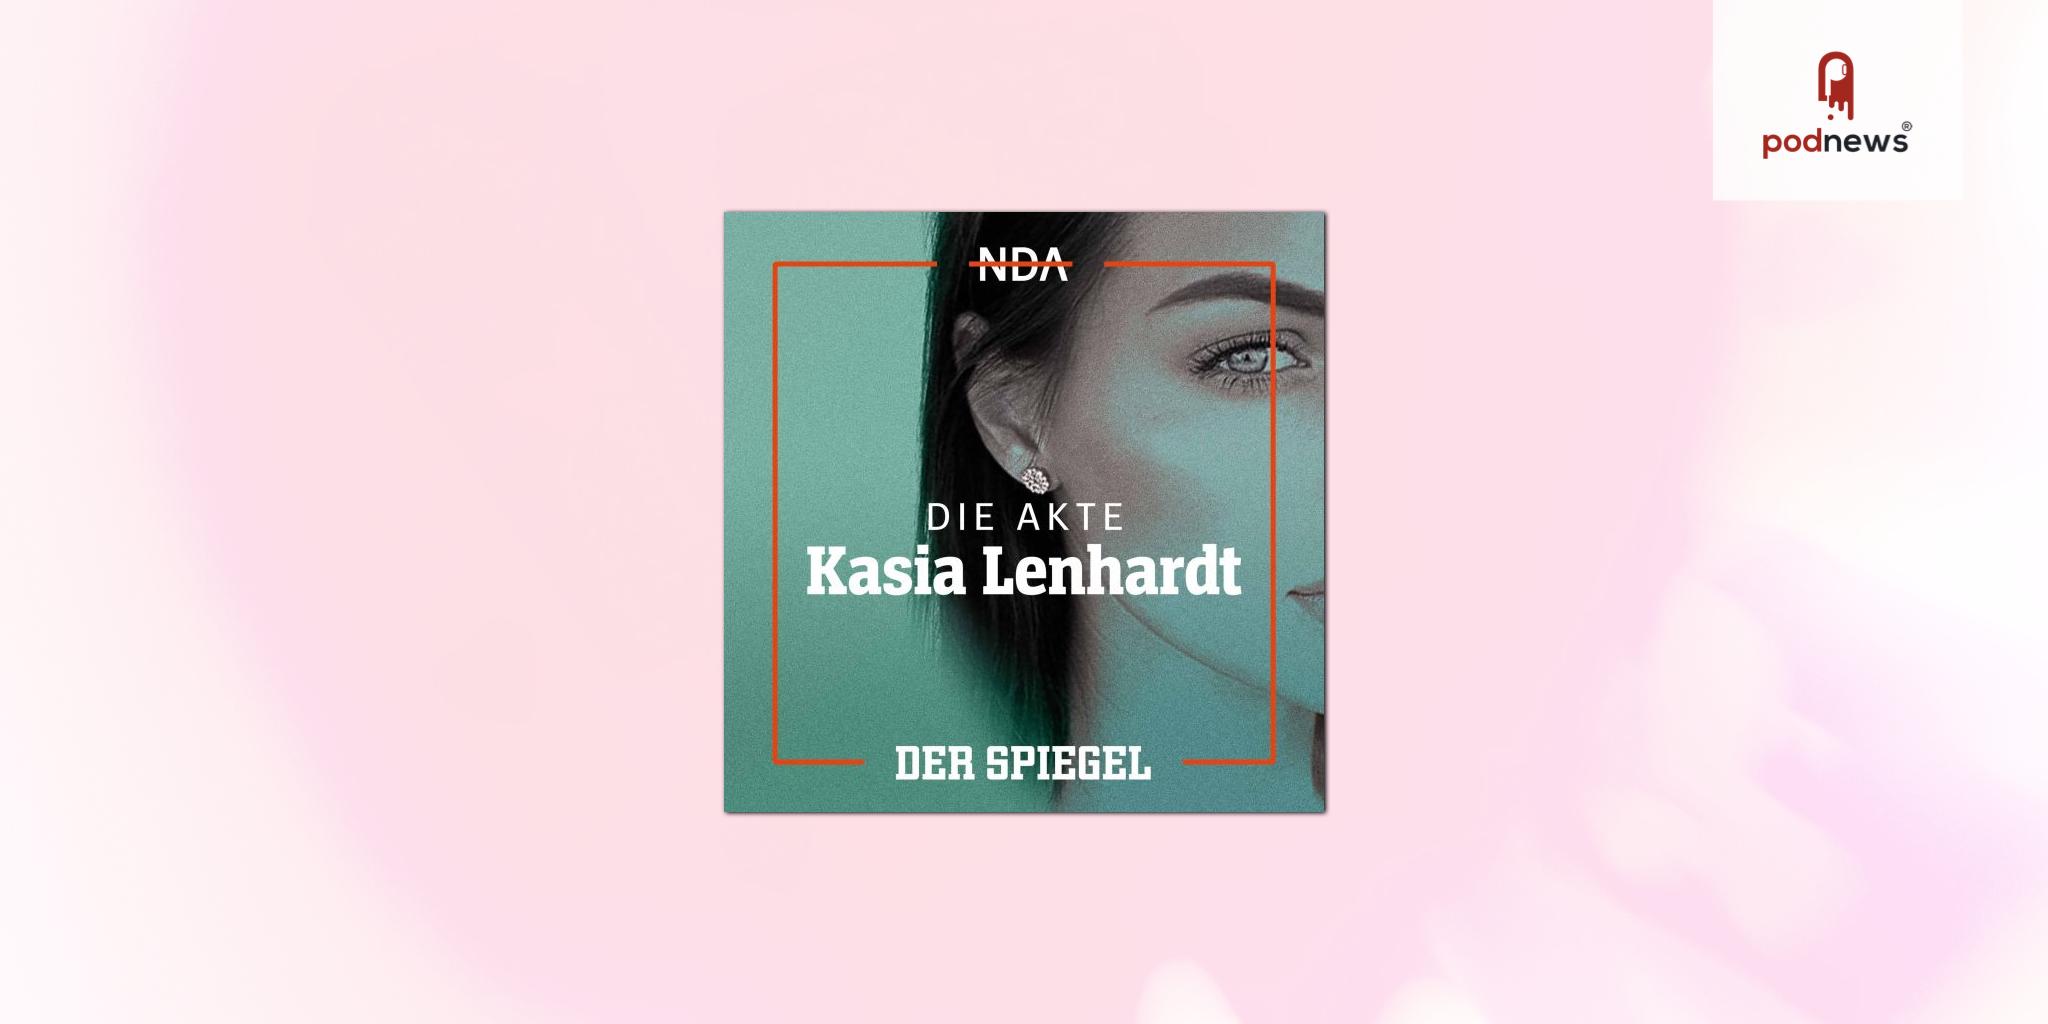 DER SPIEGEL launcht die neue Podcastreihe NDA